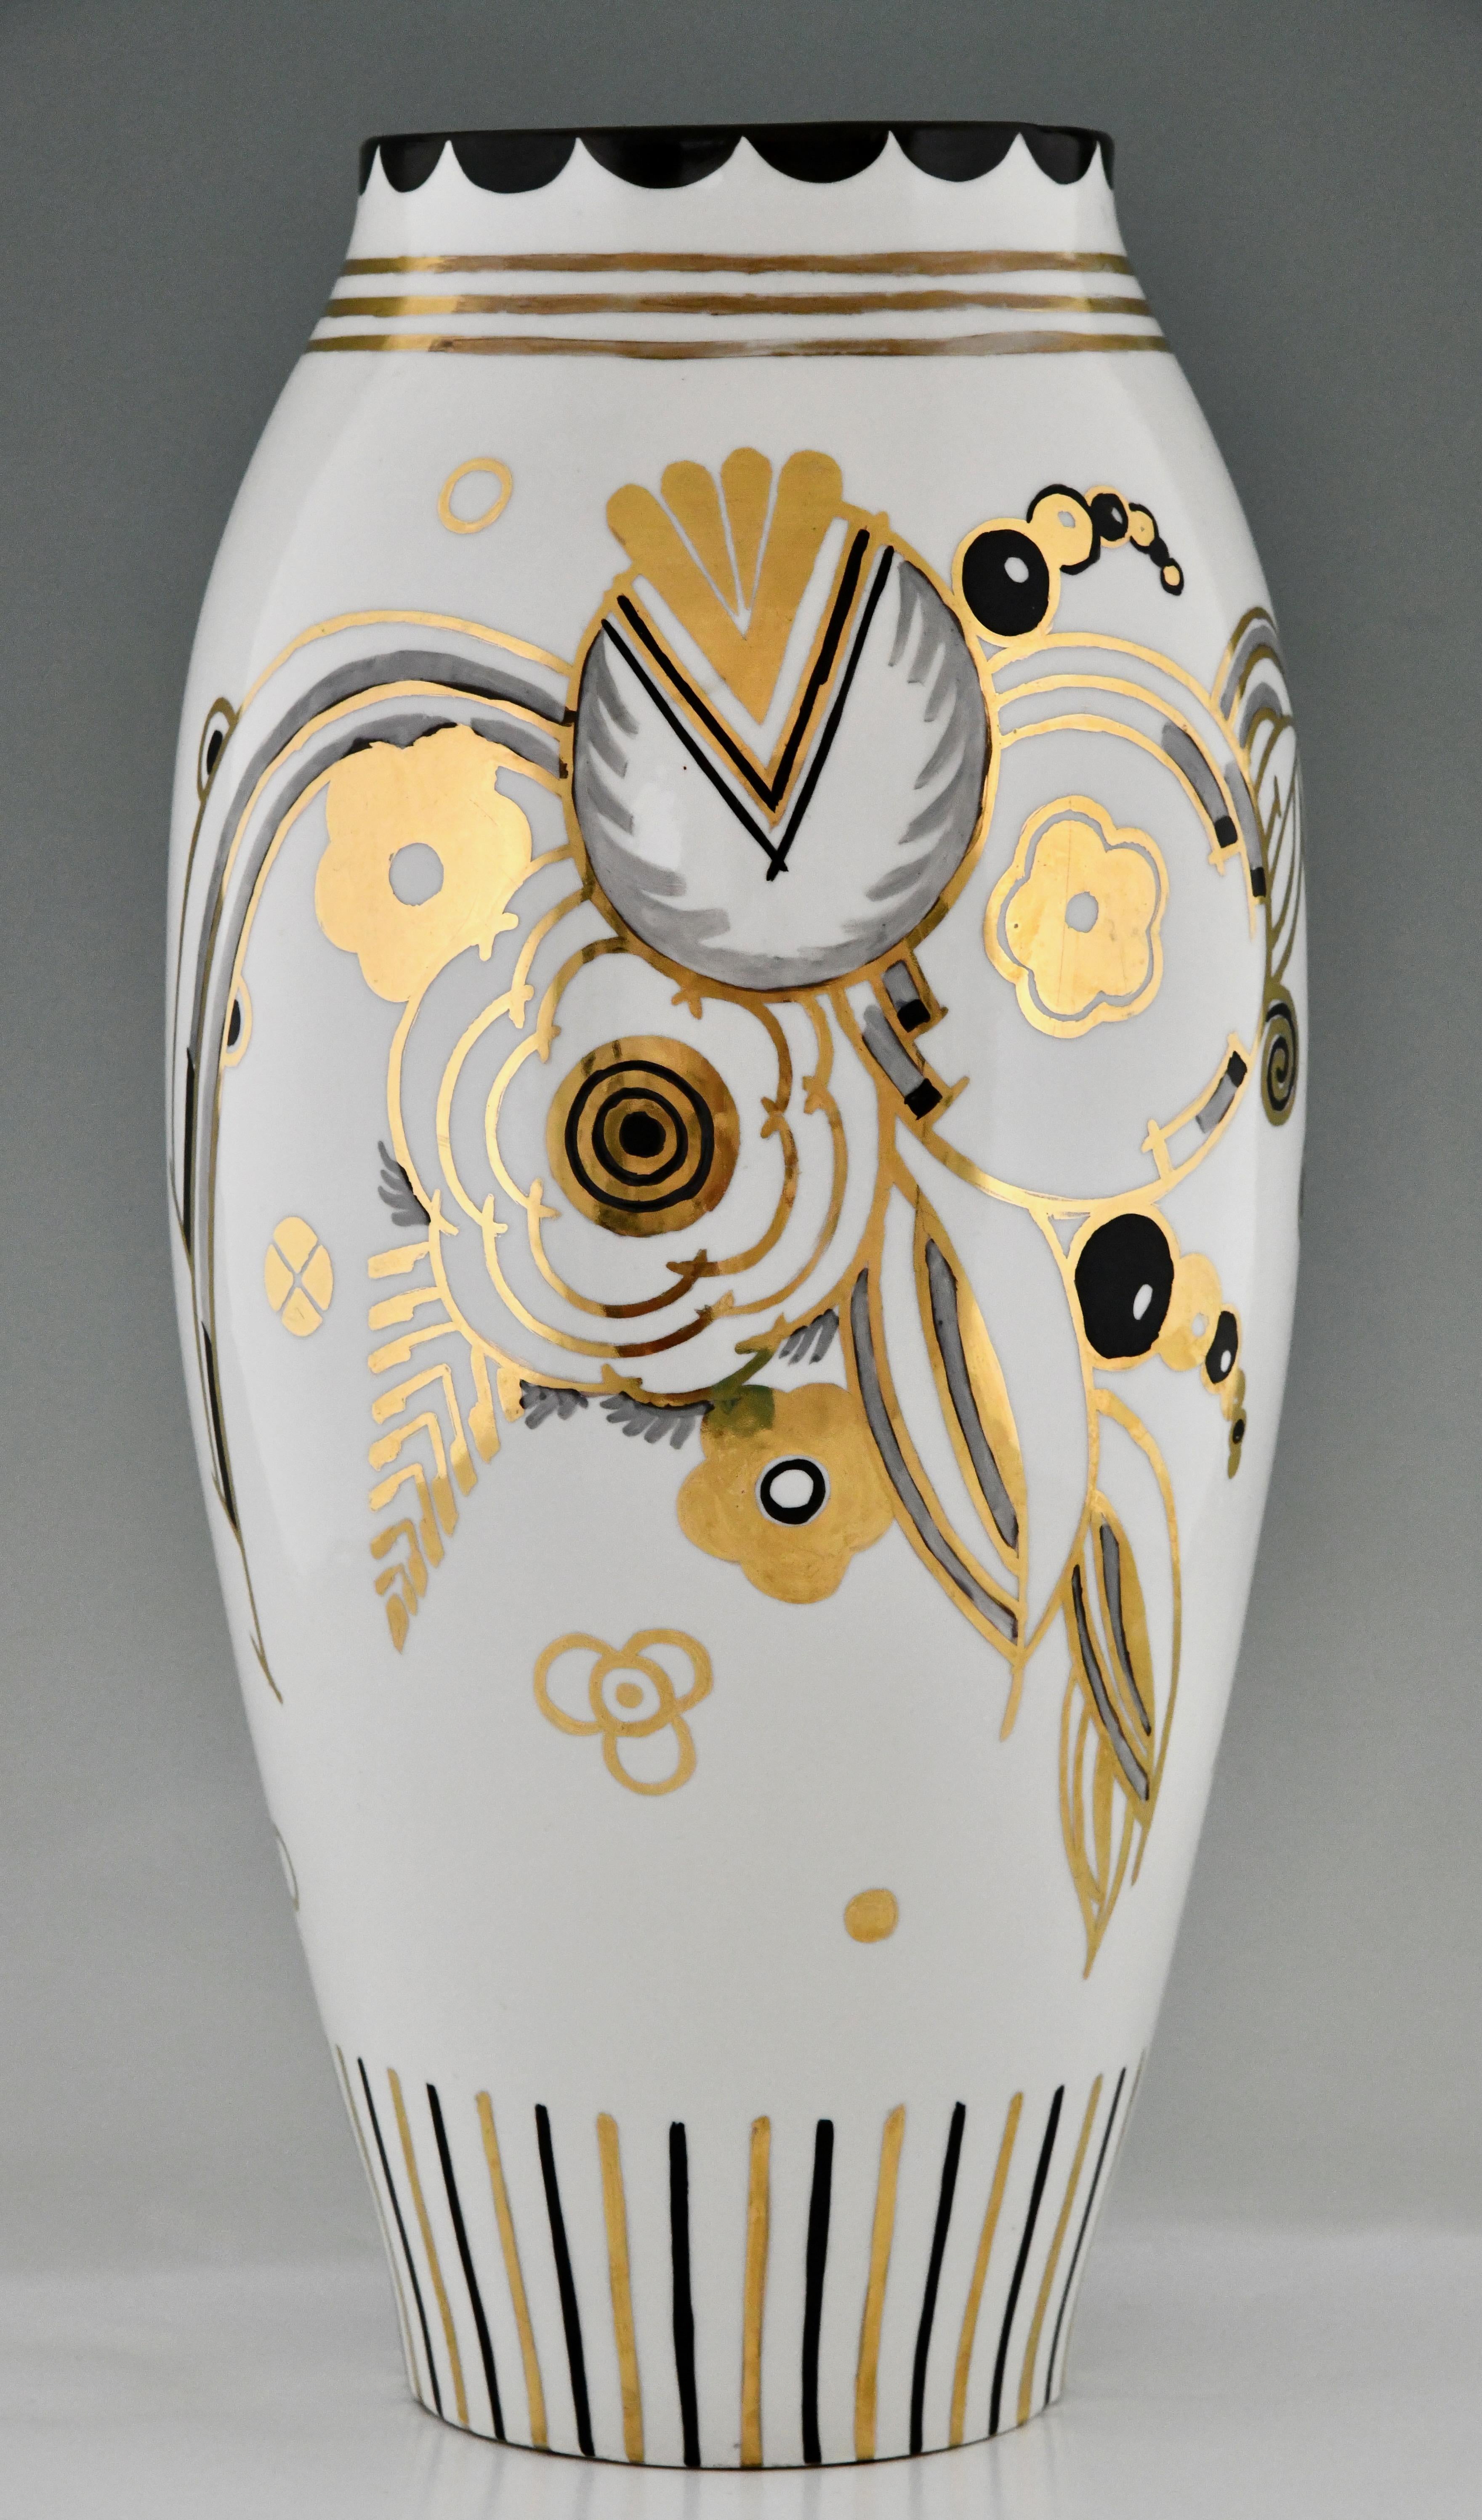 Art Deco Porzellanvase mit Blumen, signiert von Ernest Ventrillon für Les Arts Réunis. Modellnummer 296.
Hohe Vase aus elfenbeinfarbenem Porzellan mit floralem Art-déco-Muster in Gold, Silber und Schwarz. 
Frankreich 1930. 